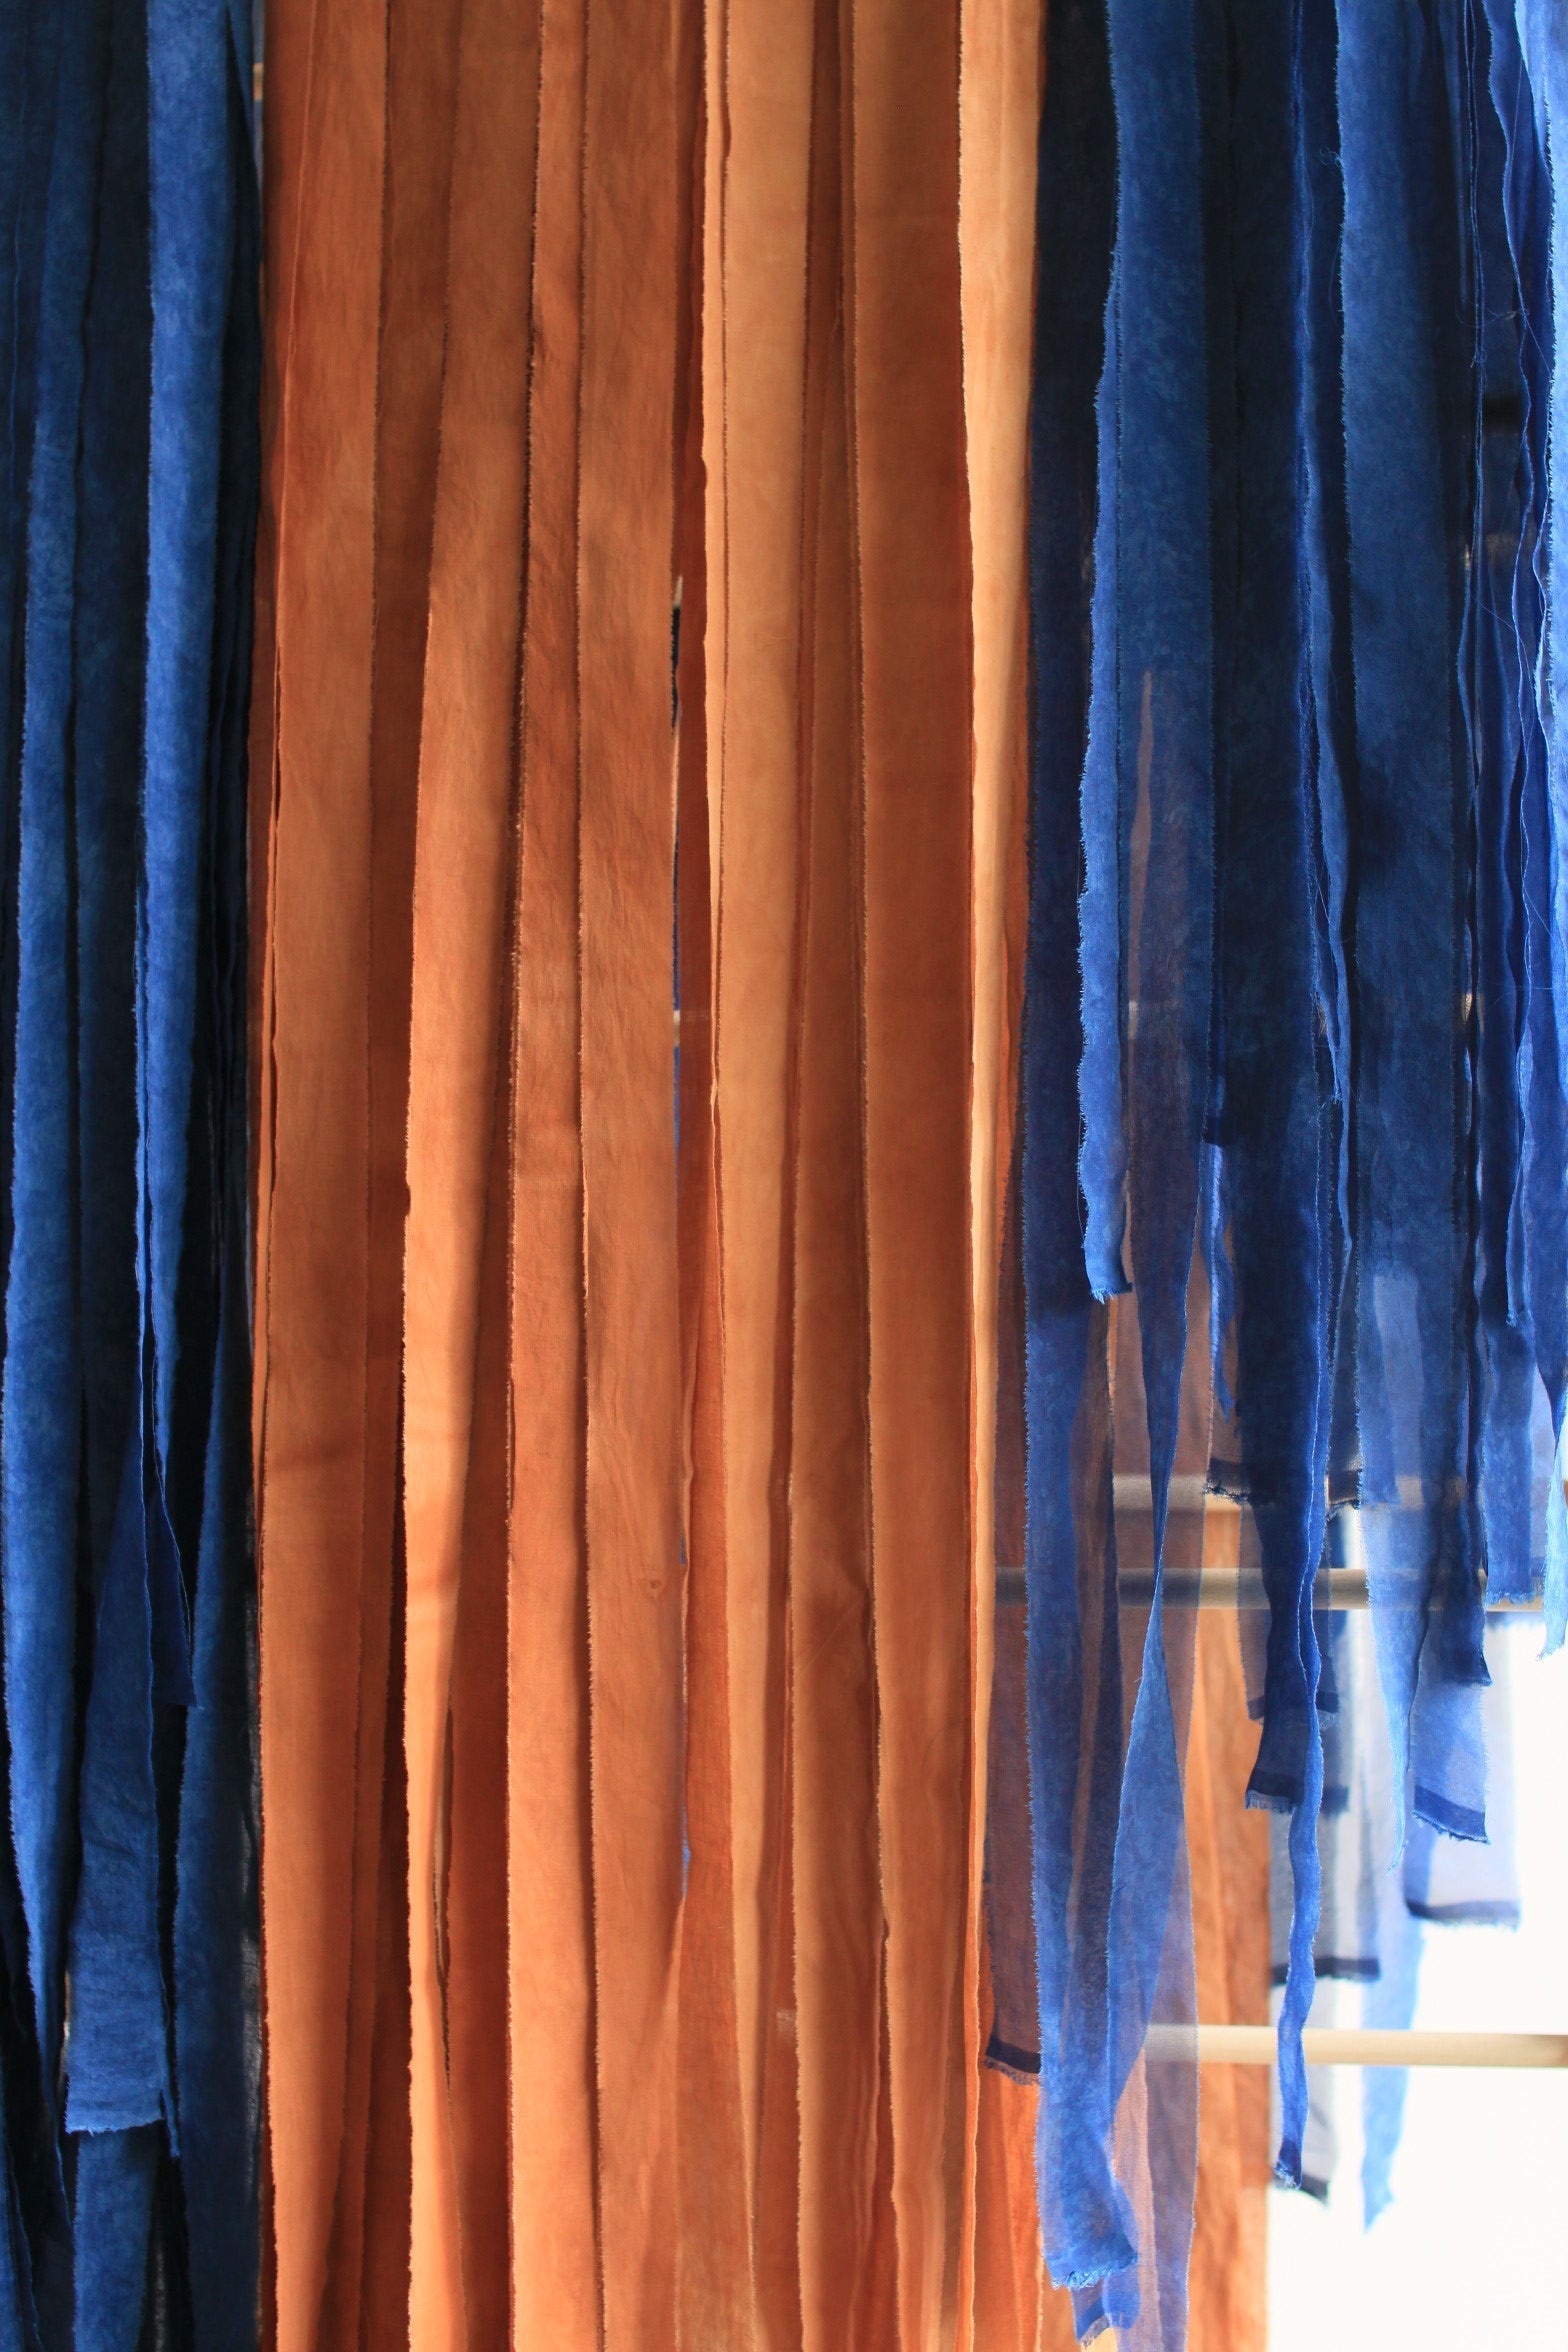 Ruban en popeline de coton - couleur "Nude/terra cotta" - largeur 3cm, longueur 2,5m